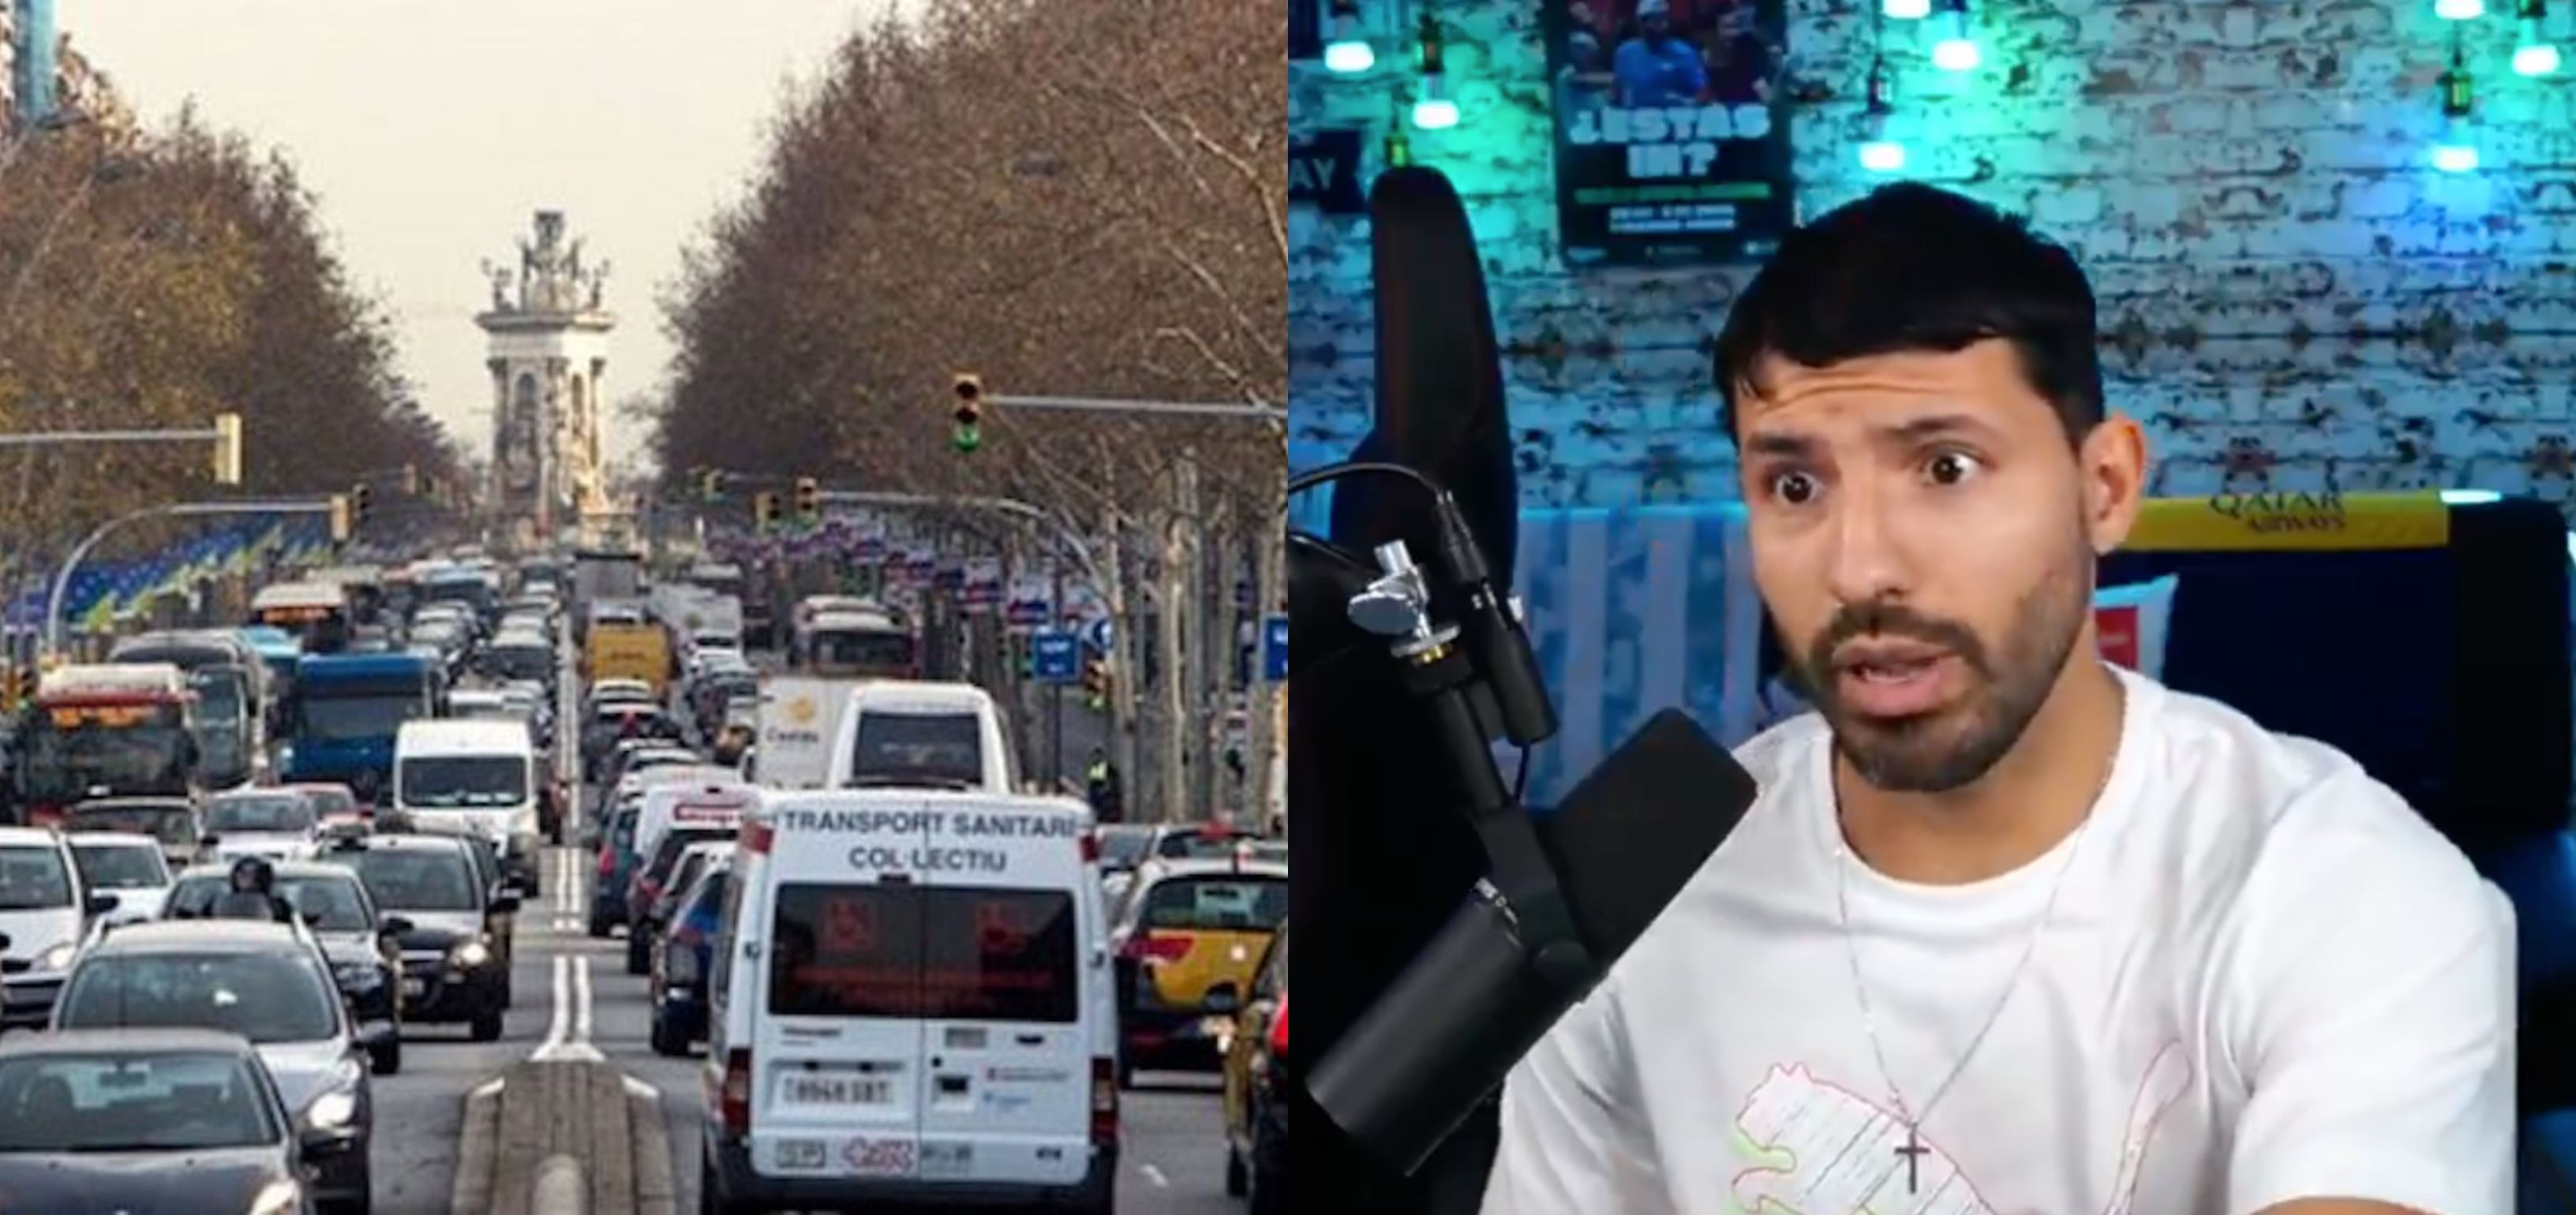 Al 'Kun' Agüero le saca de quicio el tráfico de Barcelona / ARCHIVO